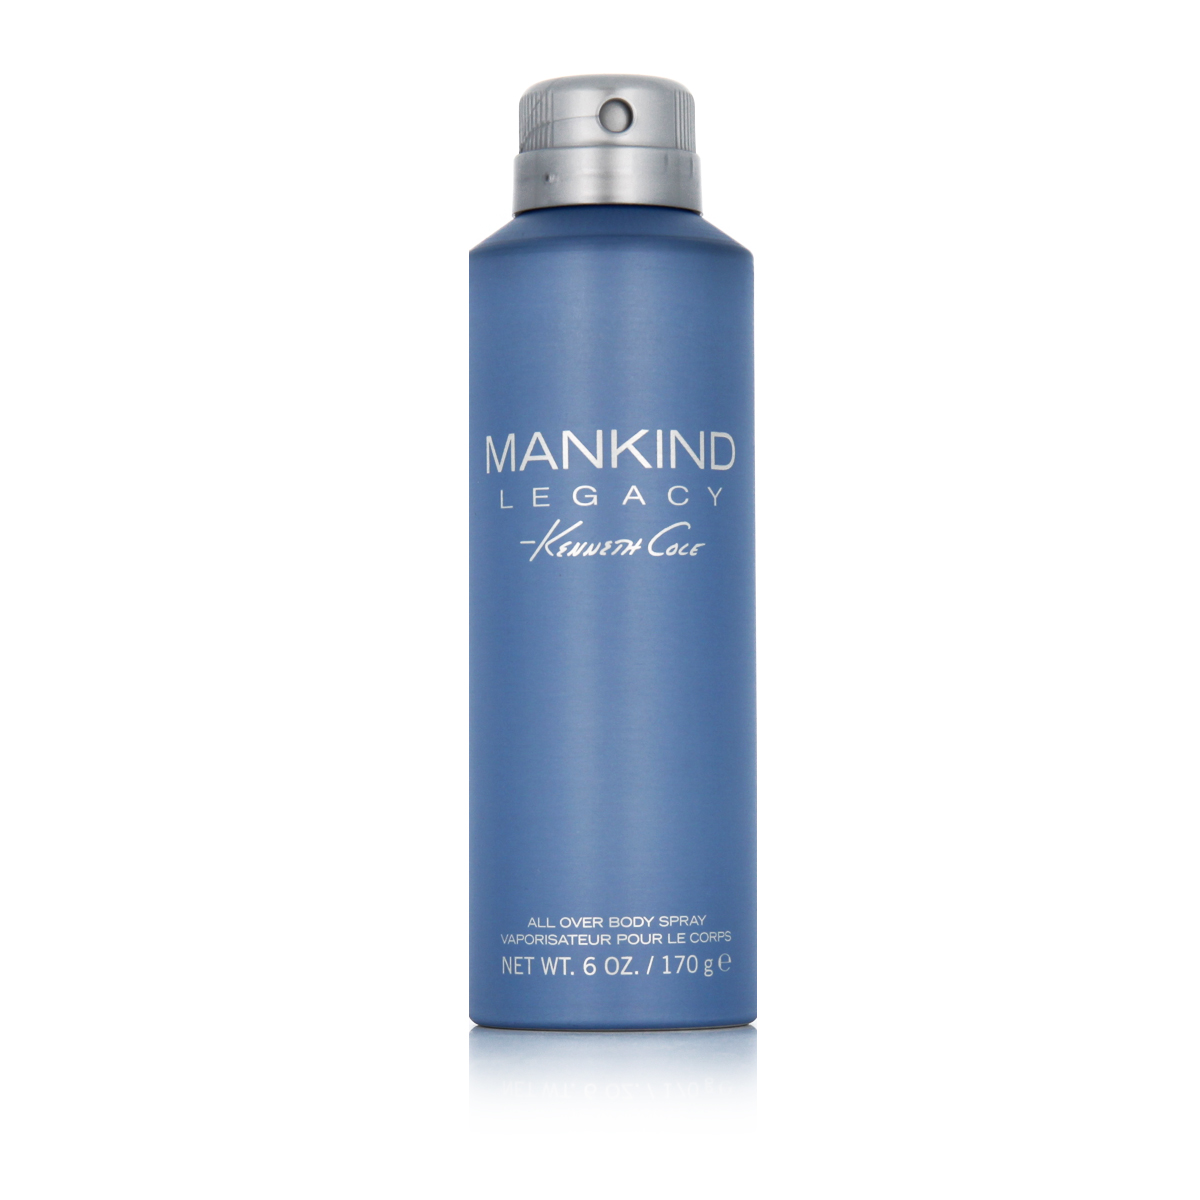 Kenneth Cole Mankind Legacy 170g dezodorantas